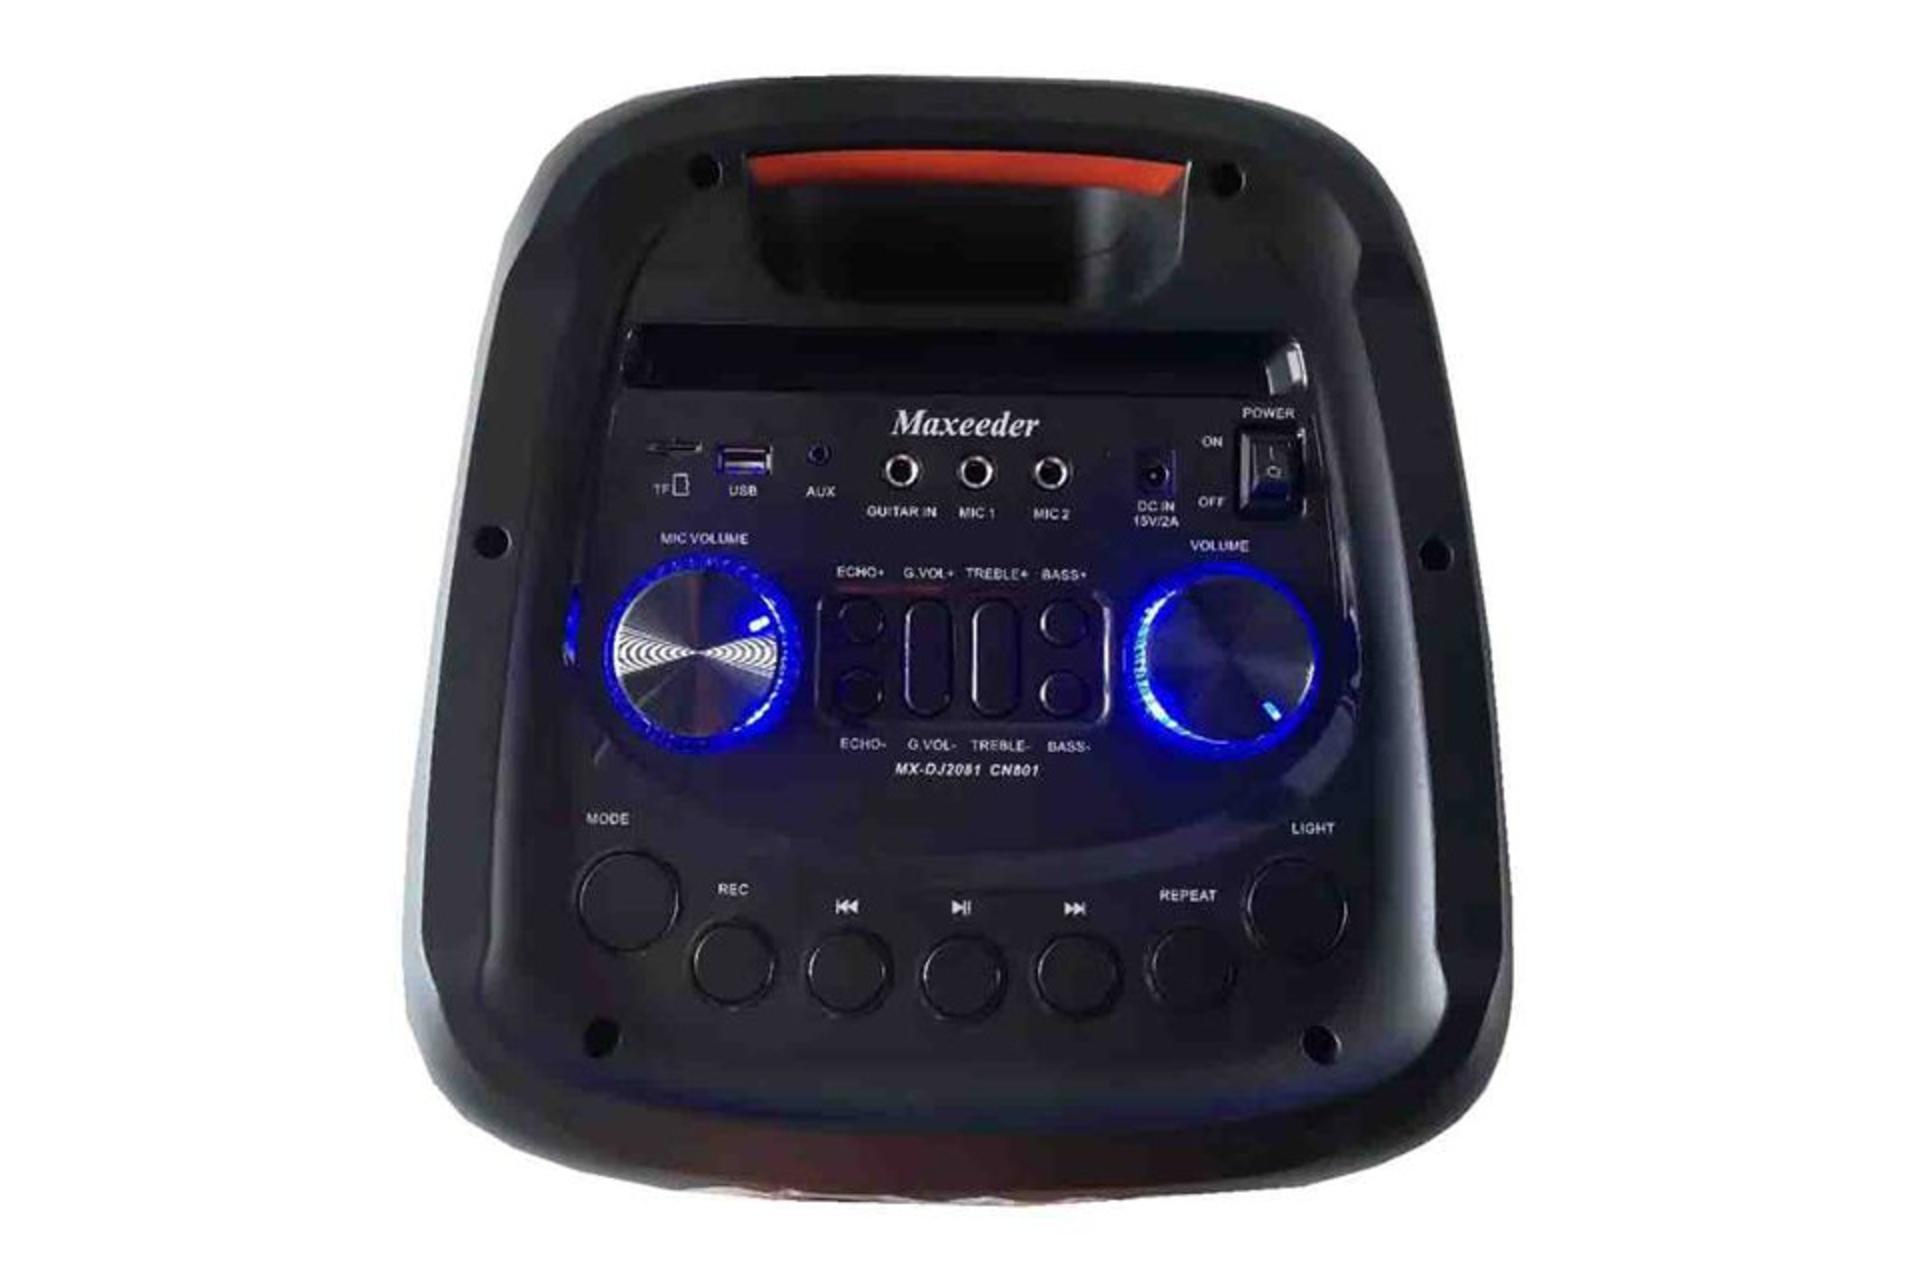 کنترل کننده صدا اسپیکر مکسیدر Maxeeder MX-DJ2081 CN801